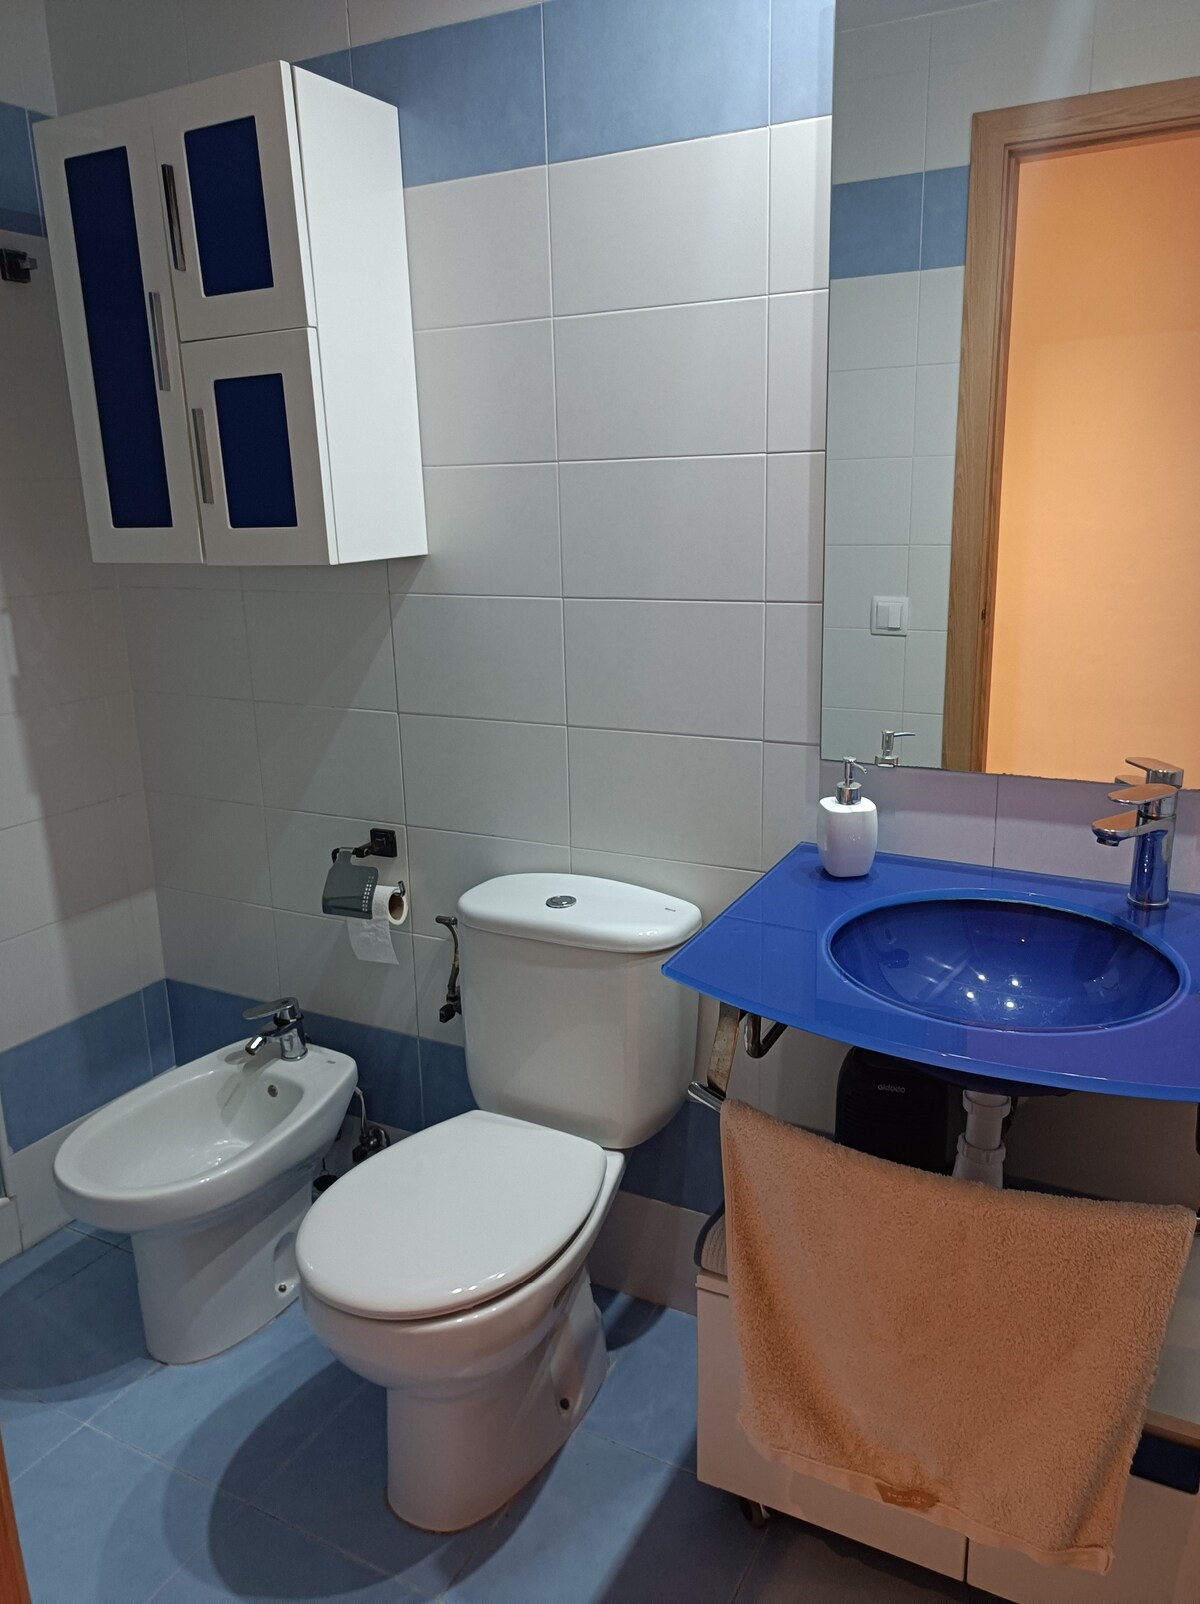 Habitación doble+ baño privado+cocina-salón (VLC)